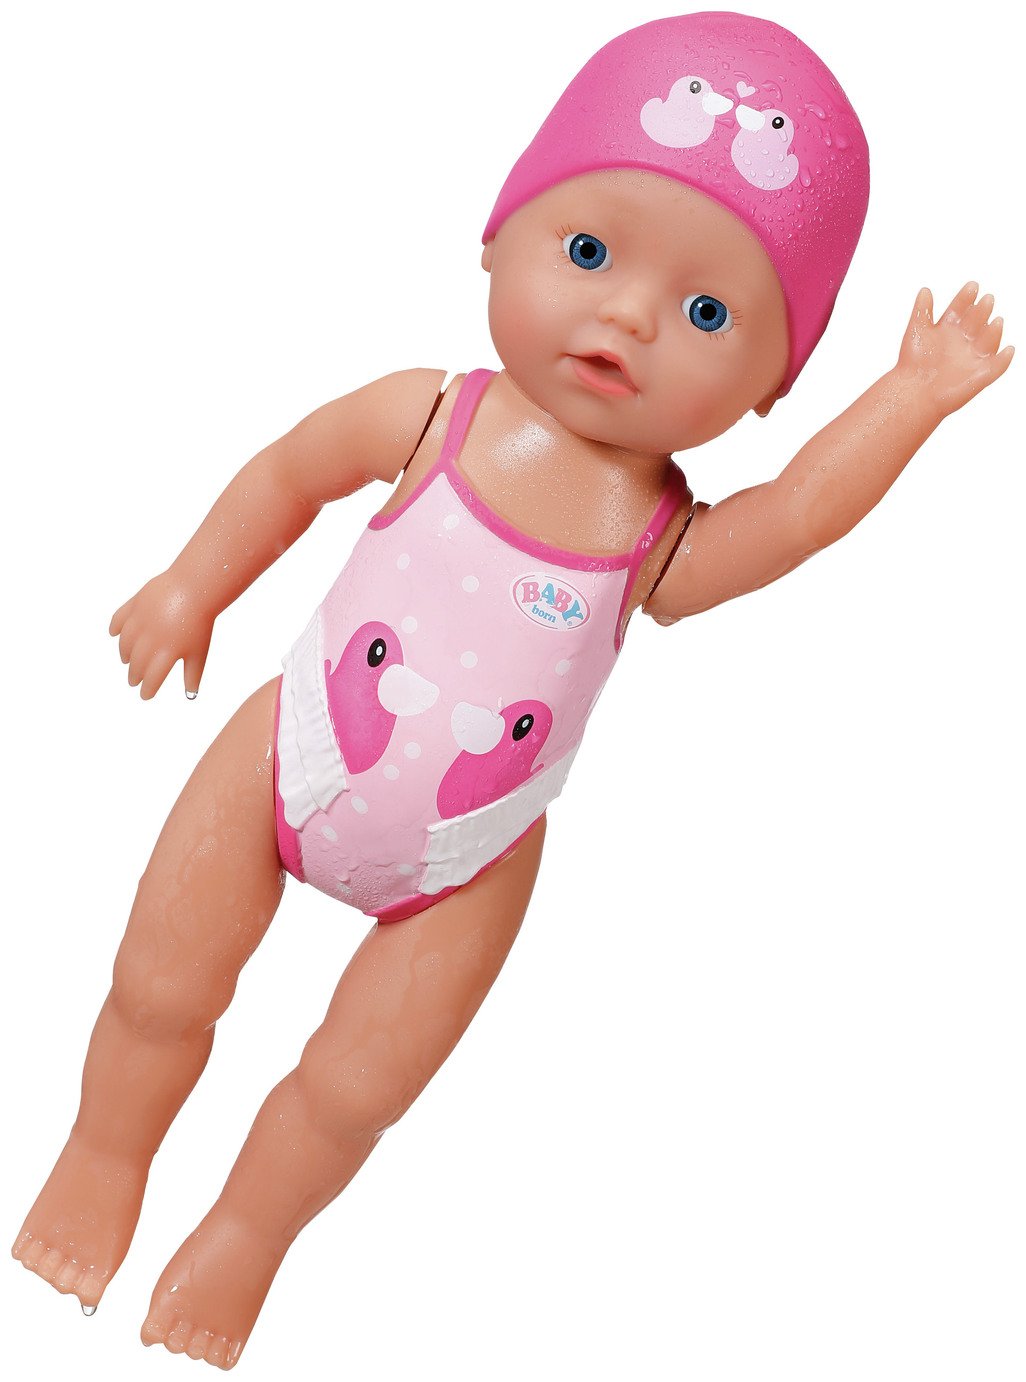 Buy　First　My　Doll　BABY　born　Dolls　Swim　12inch/30cm　Argos